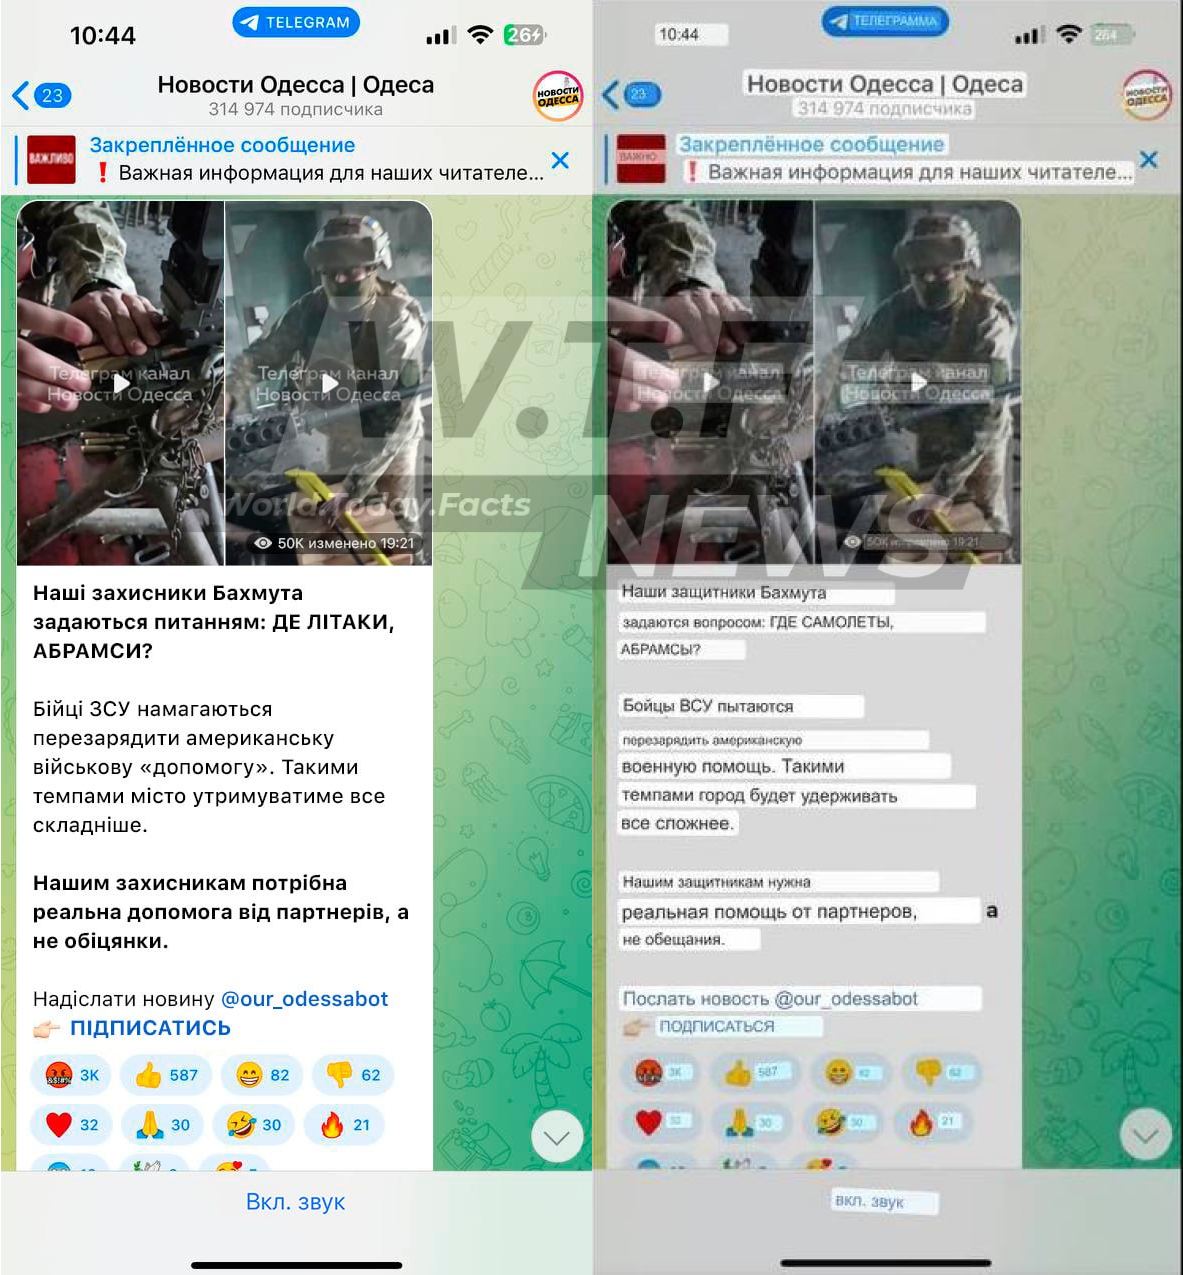 Военные каналы на украине телеграмм фото 106